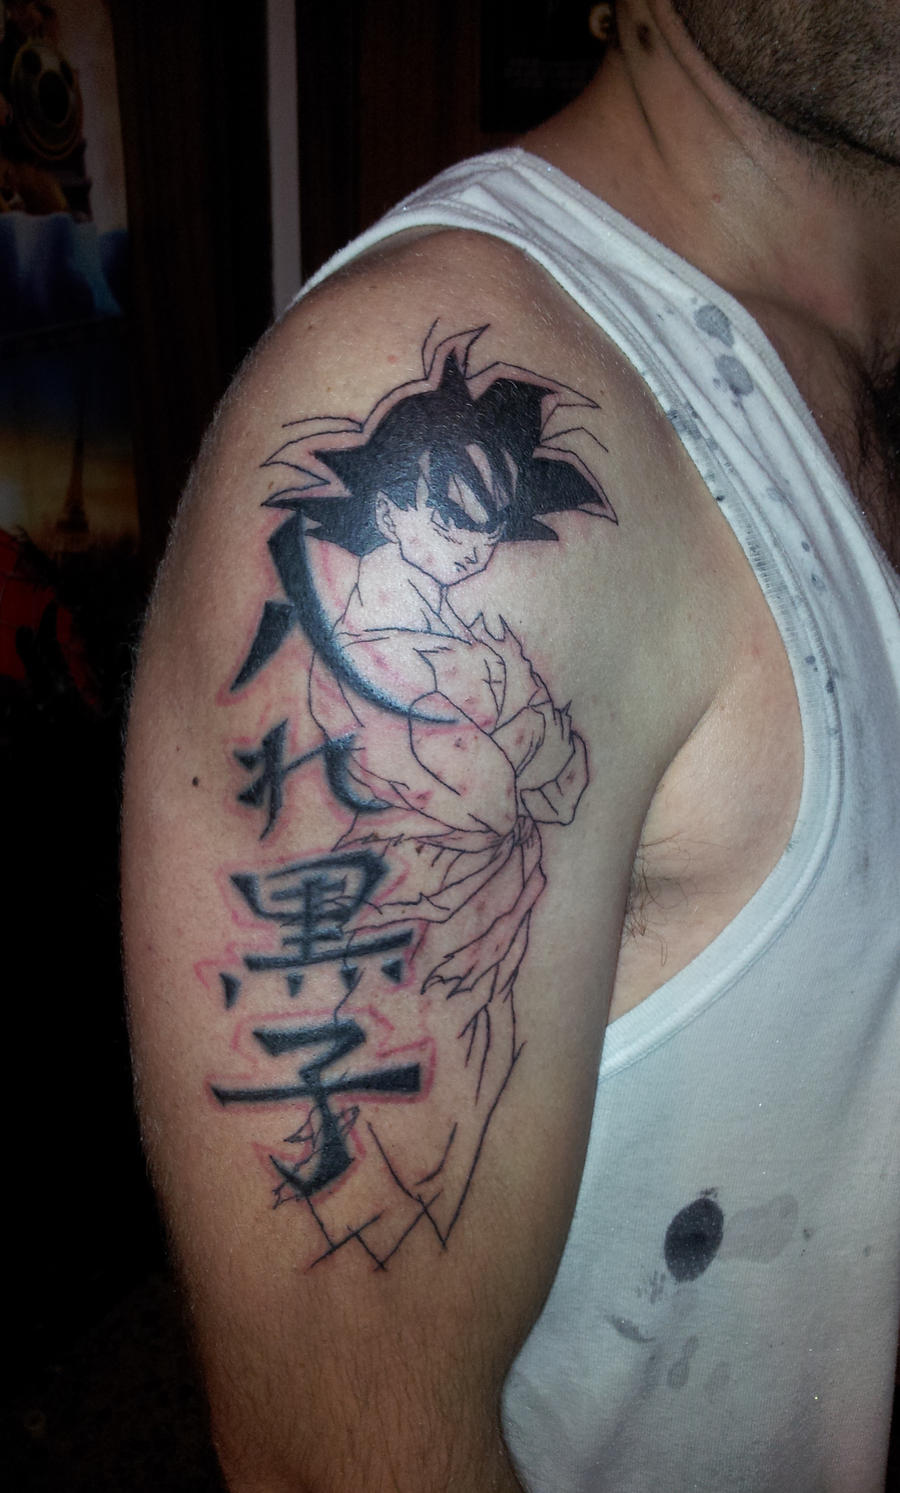 Tattoo Son Goku al 40 by curi222 on DeviantArt